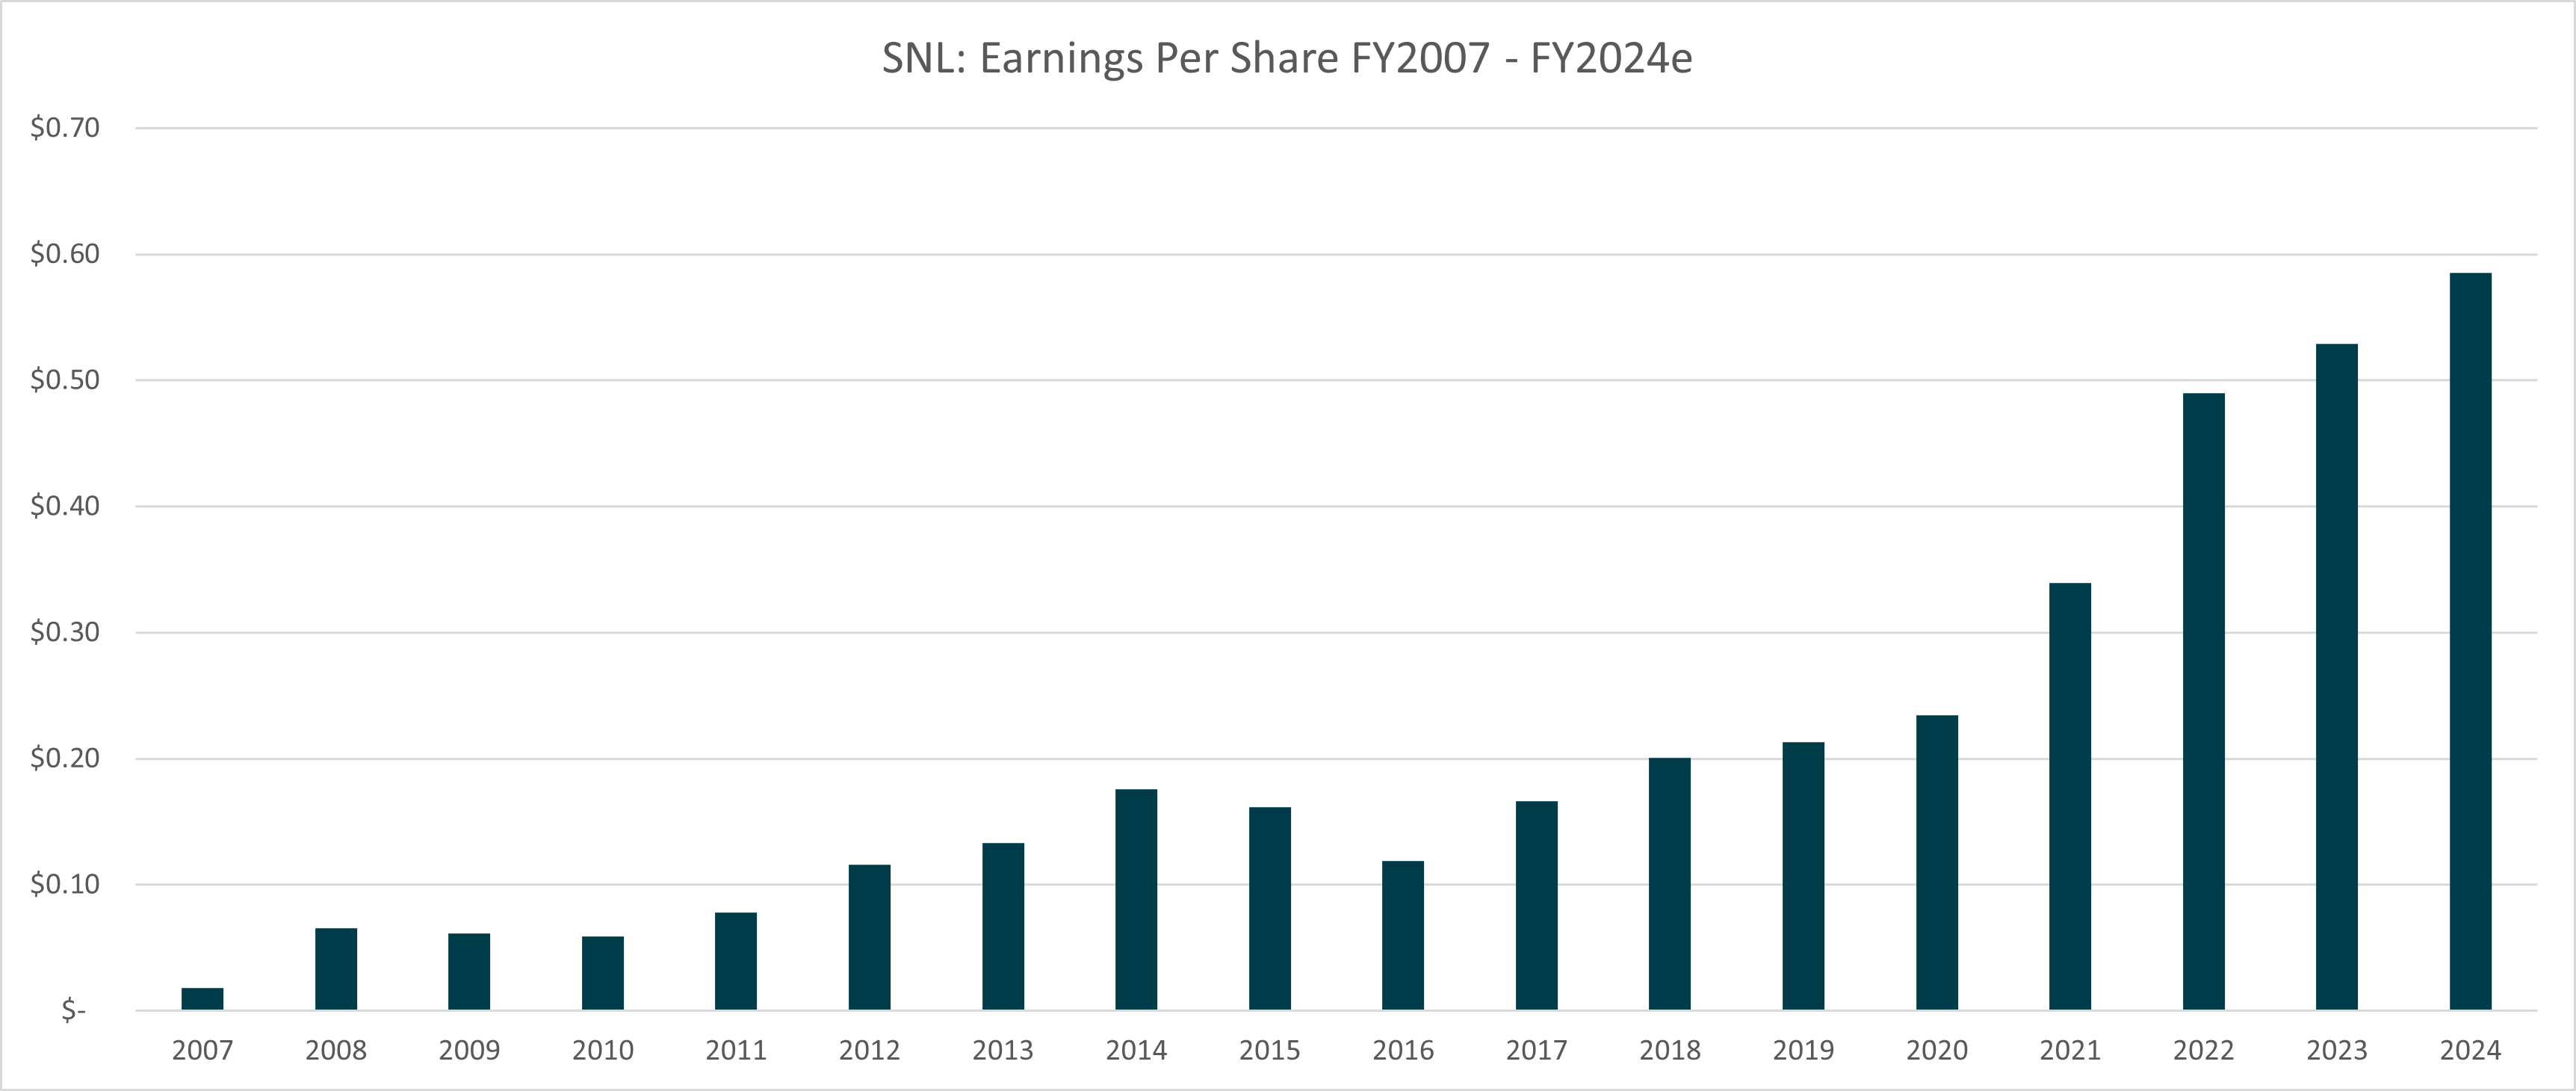 Figure 6: SNL EPS, 2007 - 2024e. Source: S&P/Capital IQ, Elvest estimates 